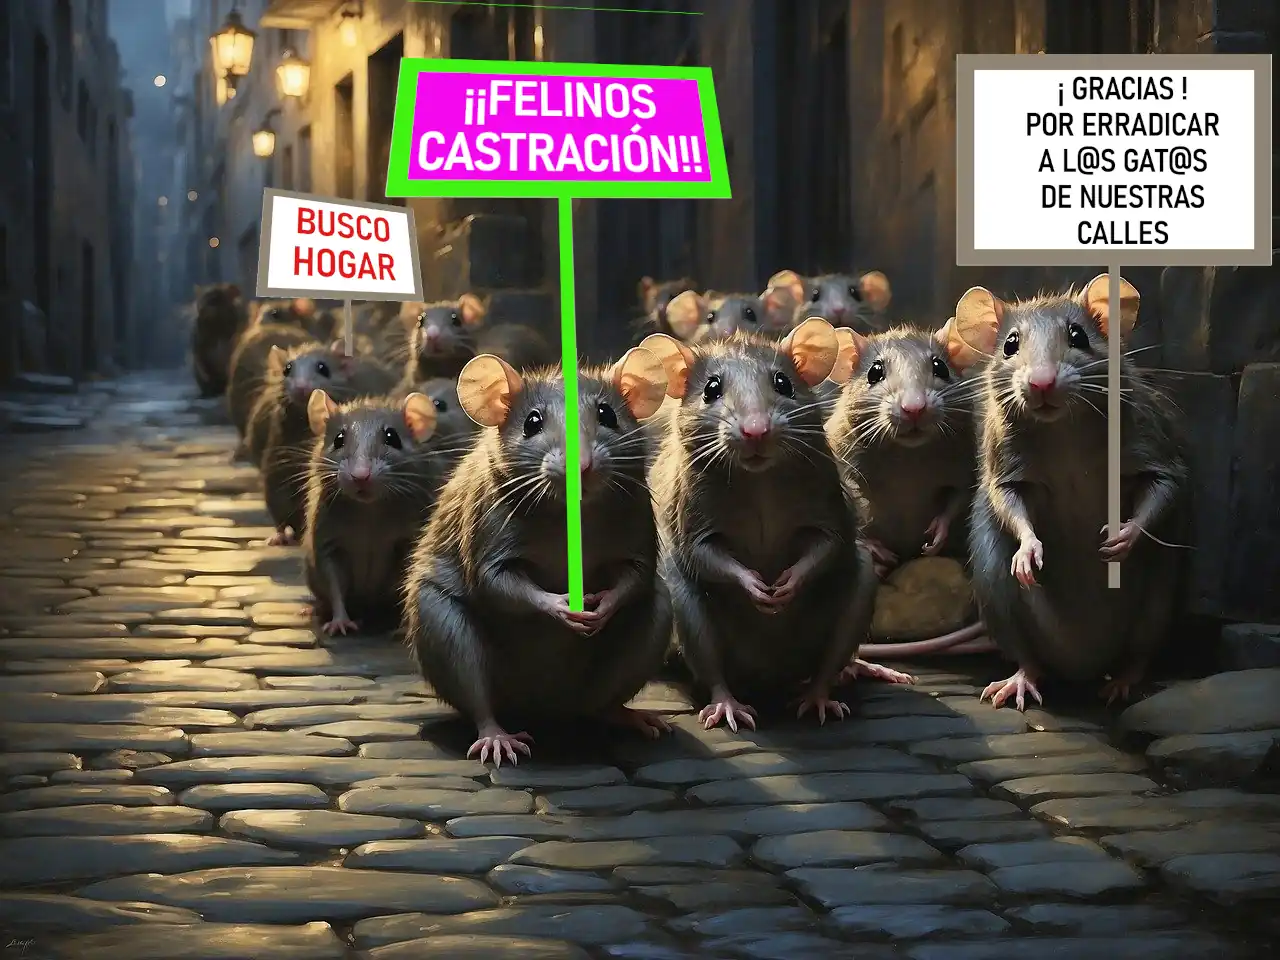 A favor de la castración de ratas